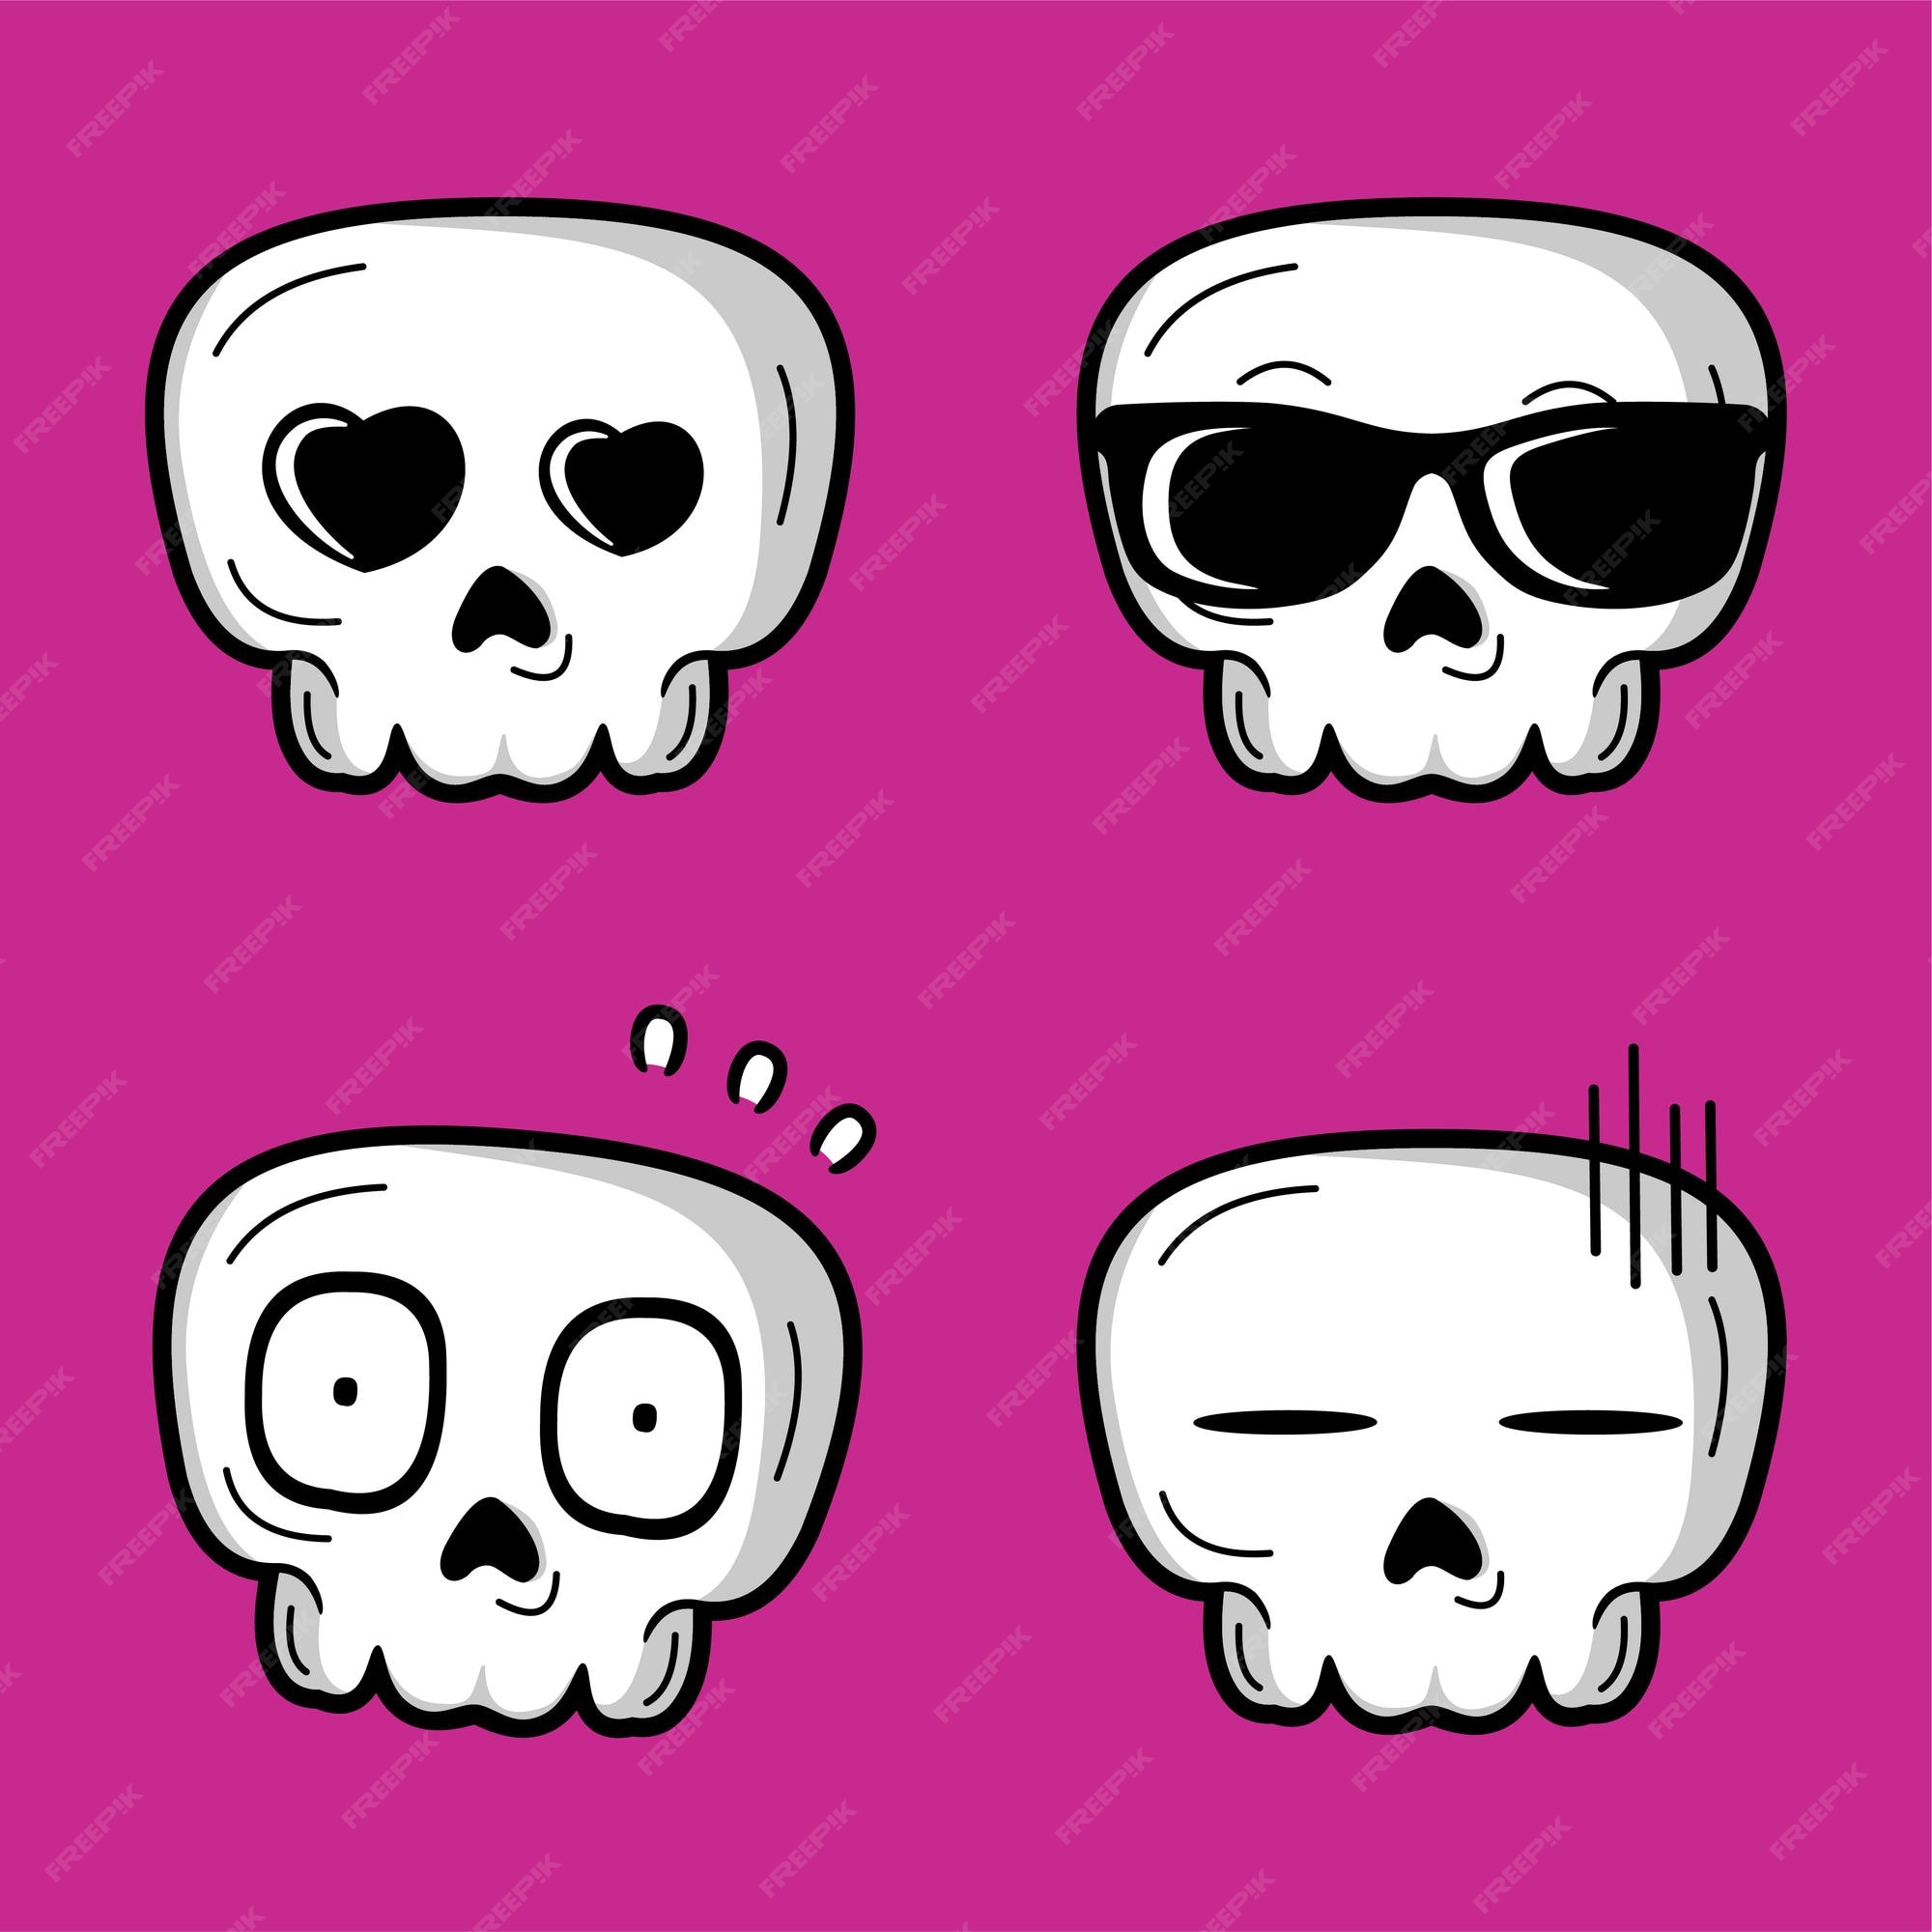 vector-illustration-cute-kawaii-skull-emoji_622216-384.jpg